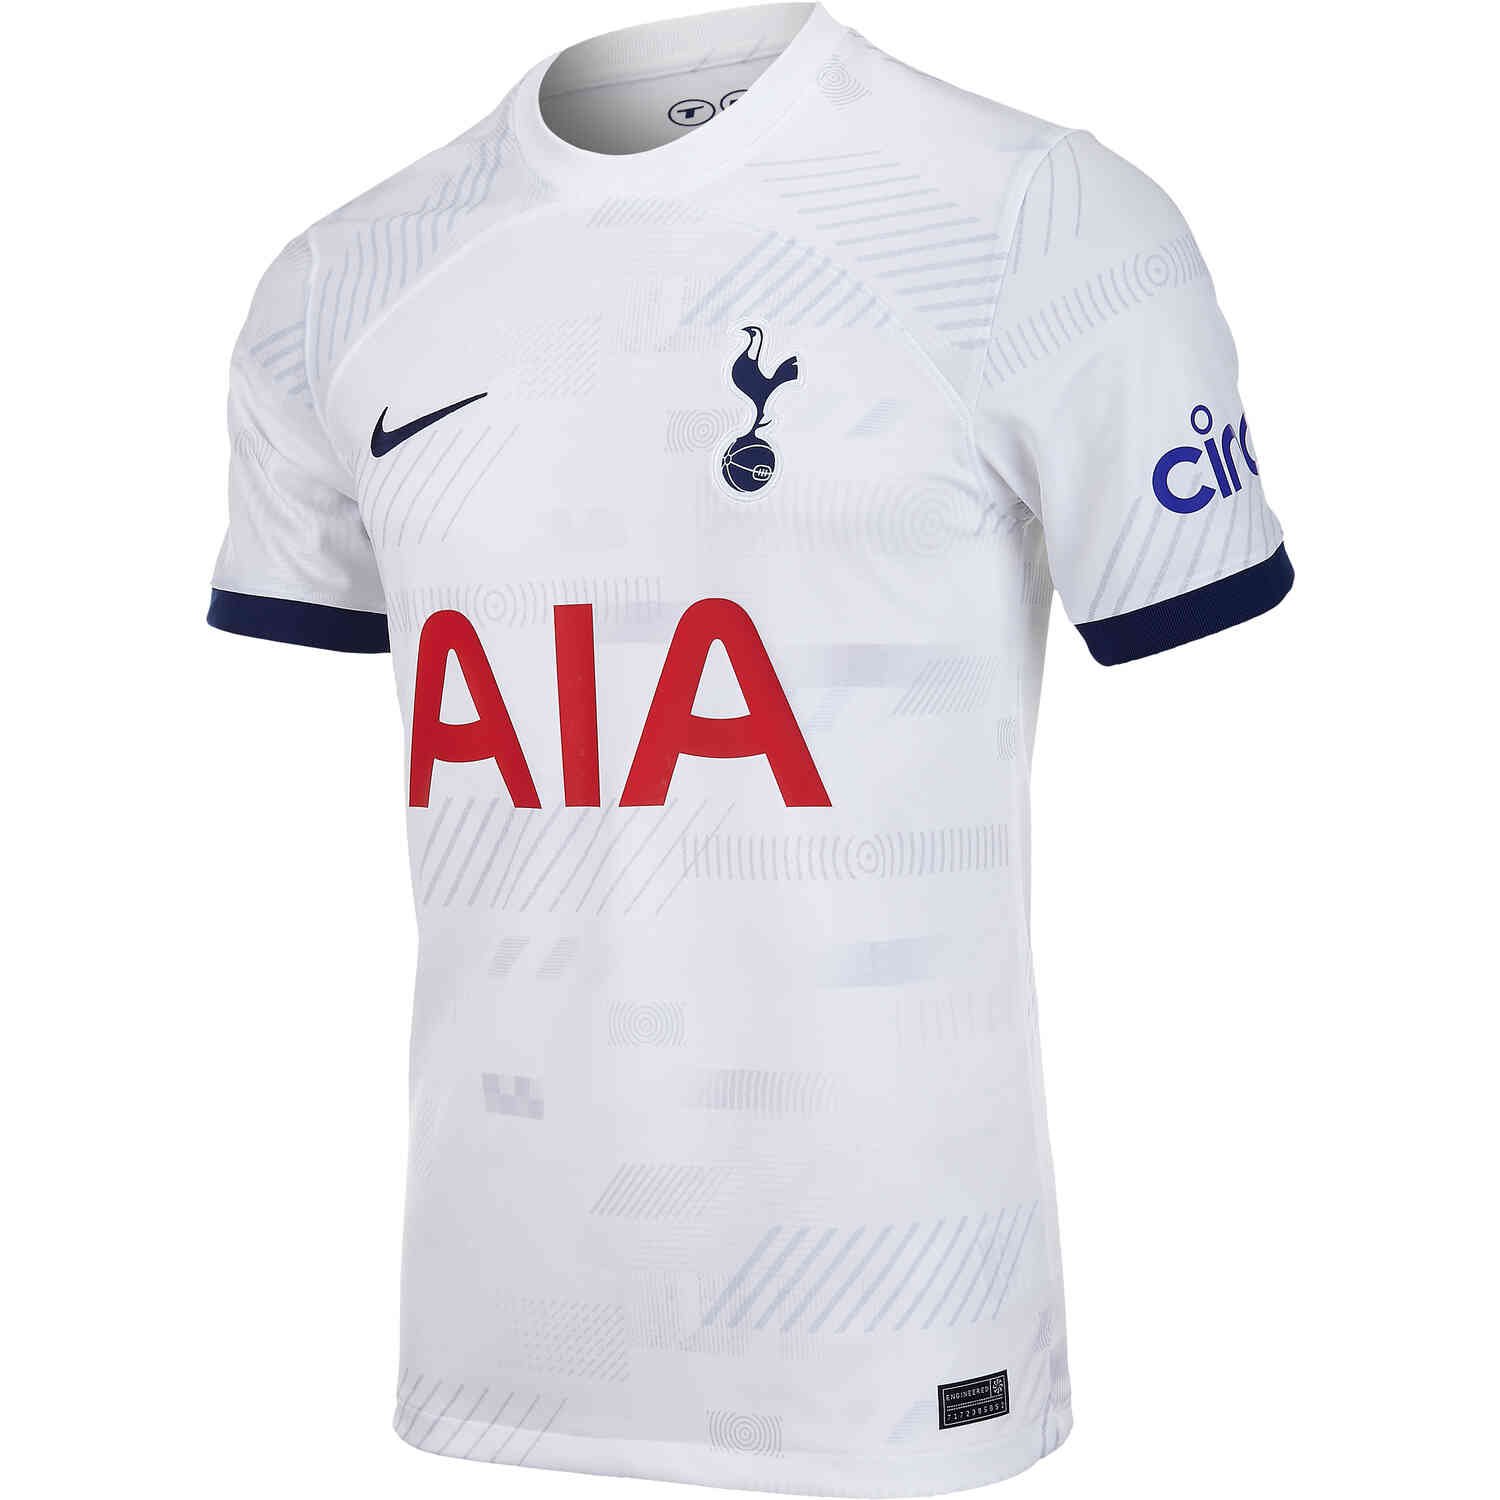 Japhet Tanganga Signed Tottenham Hotspur 23/24 Home Shirt with COA